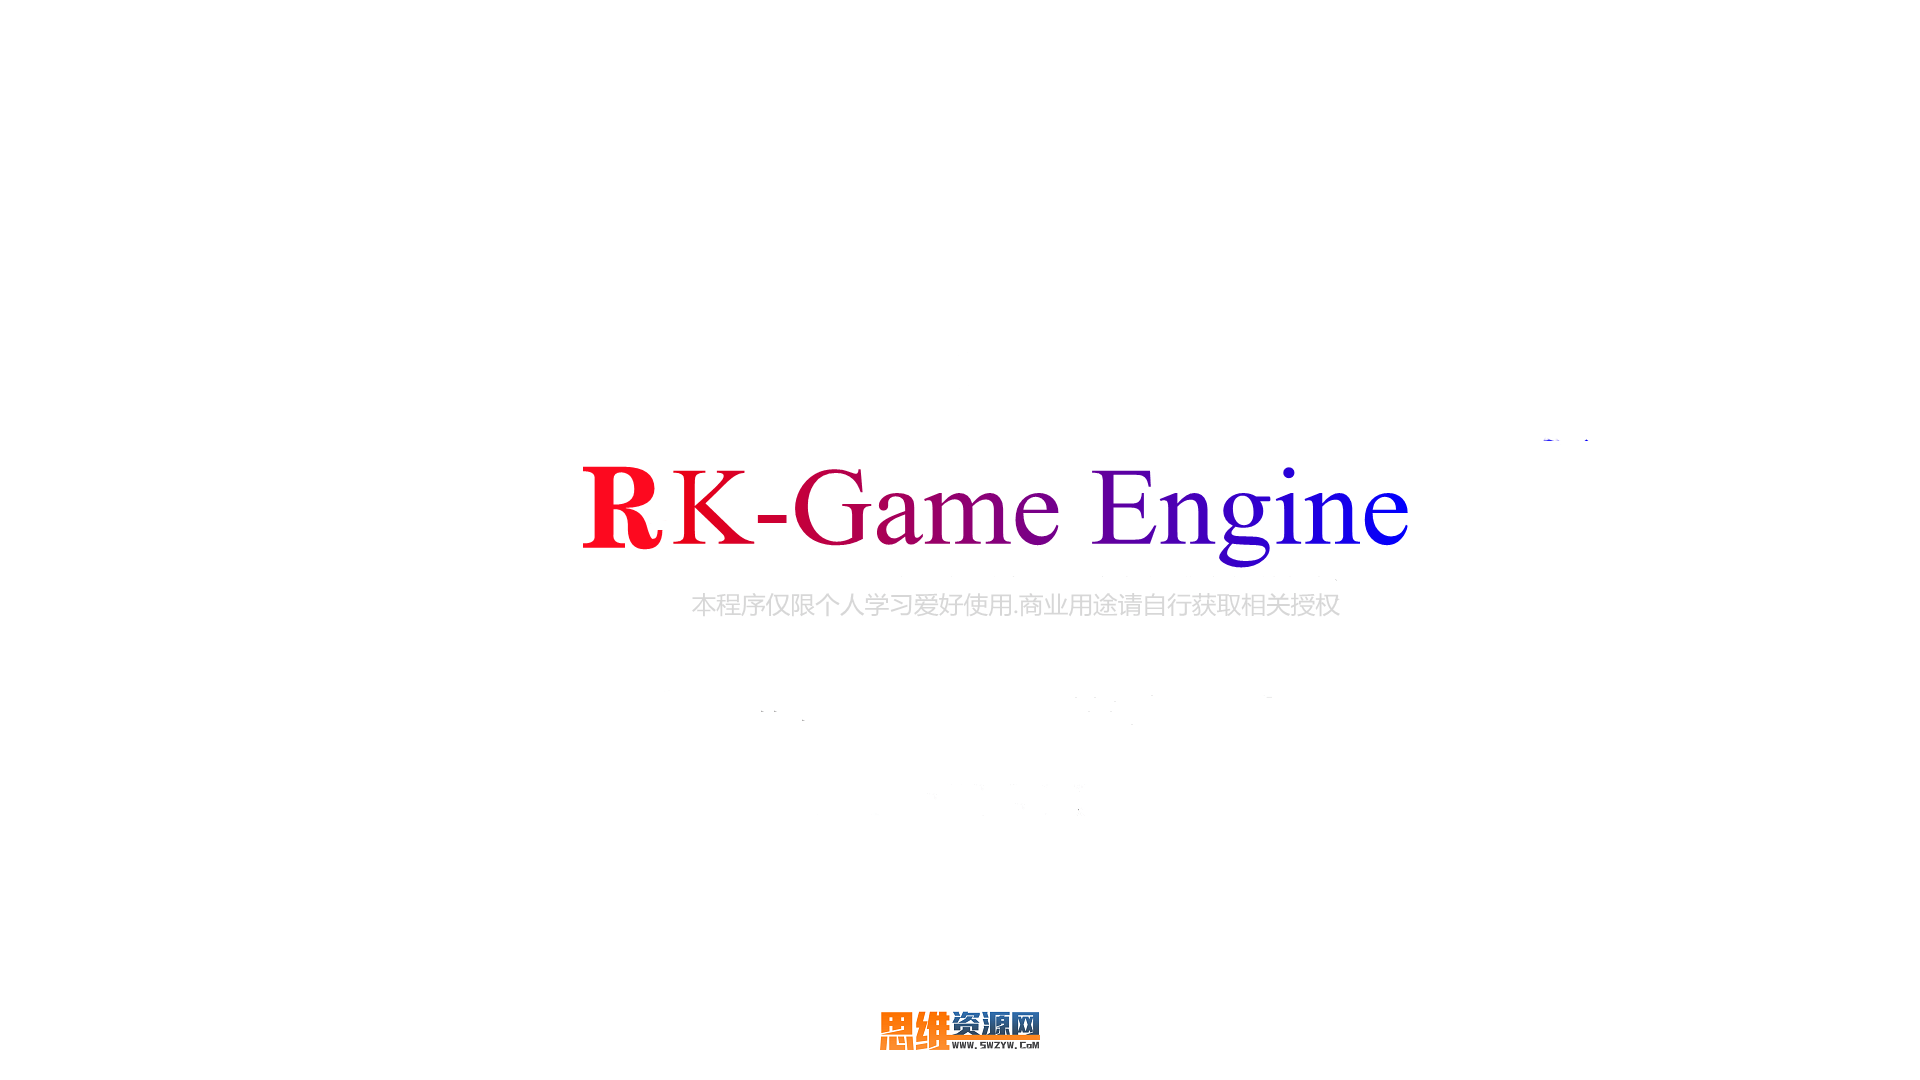 RKM2引擎-APP自定义UI文置。APP自定义UI相关文件.需要会使用COCOS2D-X.版本为3.15 